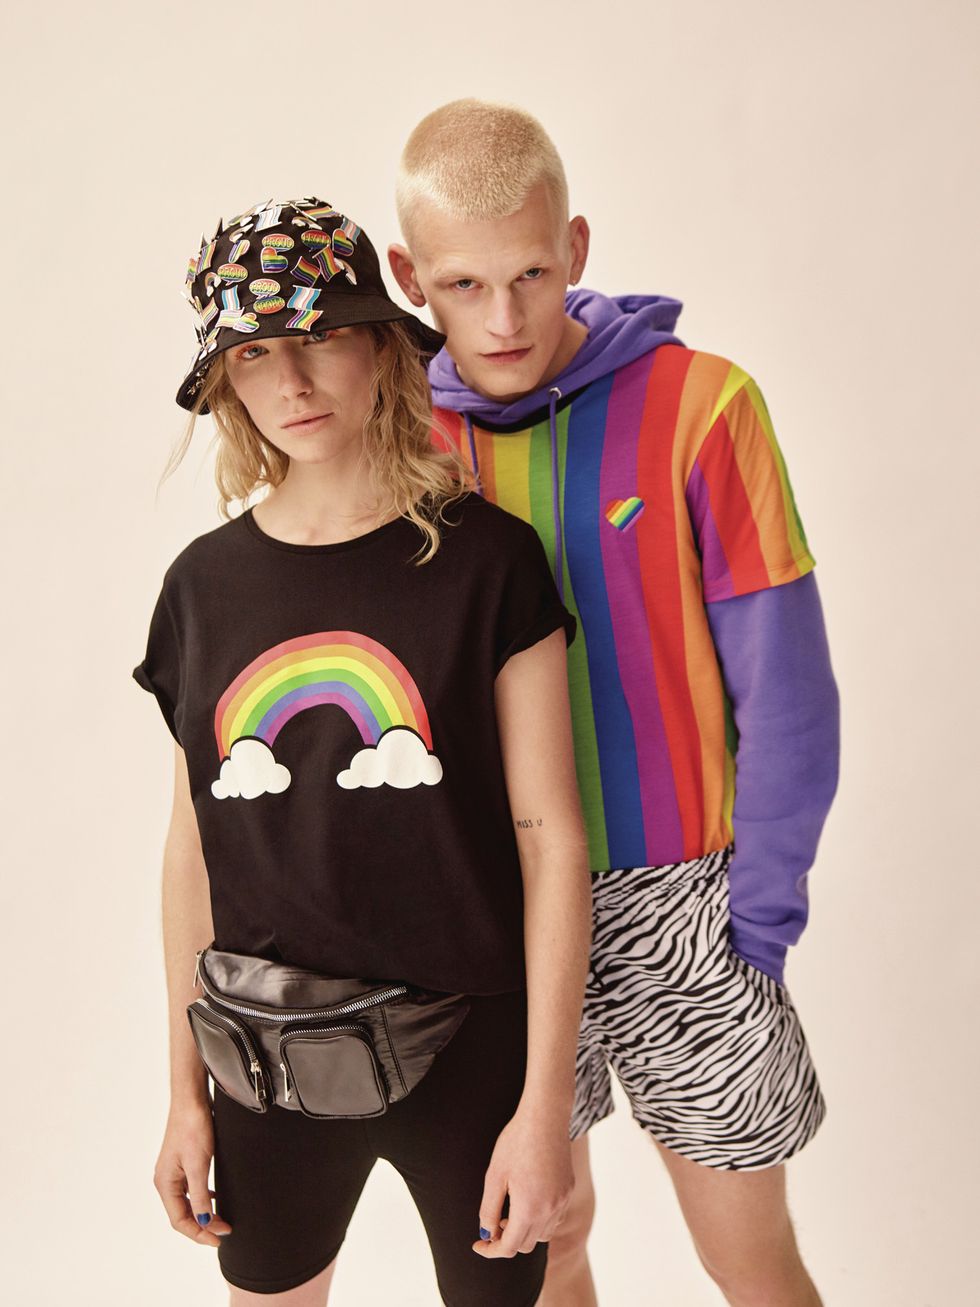 Le tendenze moda estate 2019 hanno un'impennata verso i colori arcobaleno, righe spesse e vistose su ogni capo cult del guardaroba, dalle t-shirt rainbow ai costumi, passando per le sneakers: it's Pride Month.